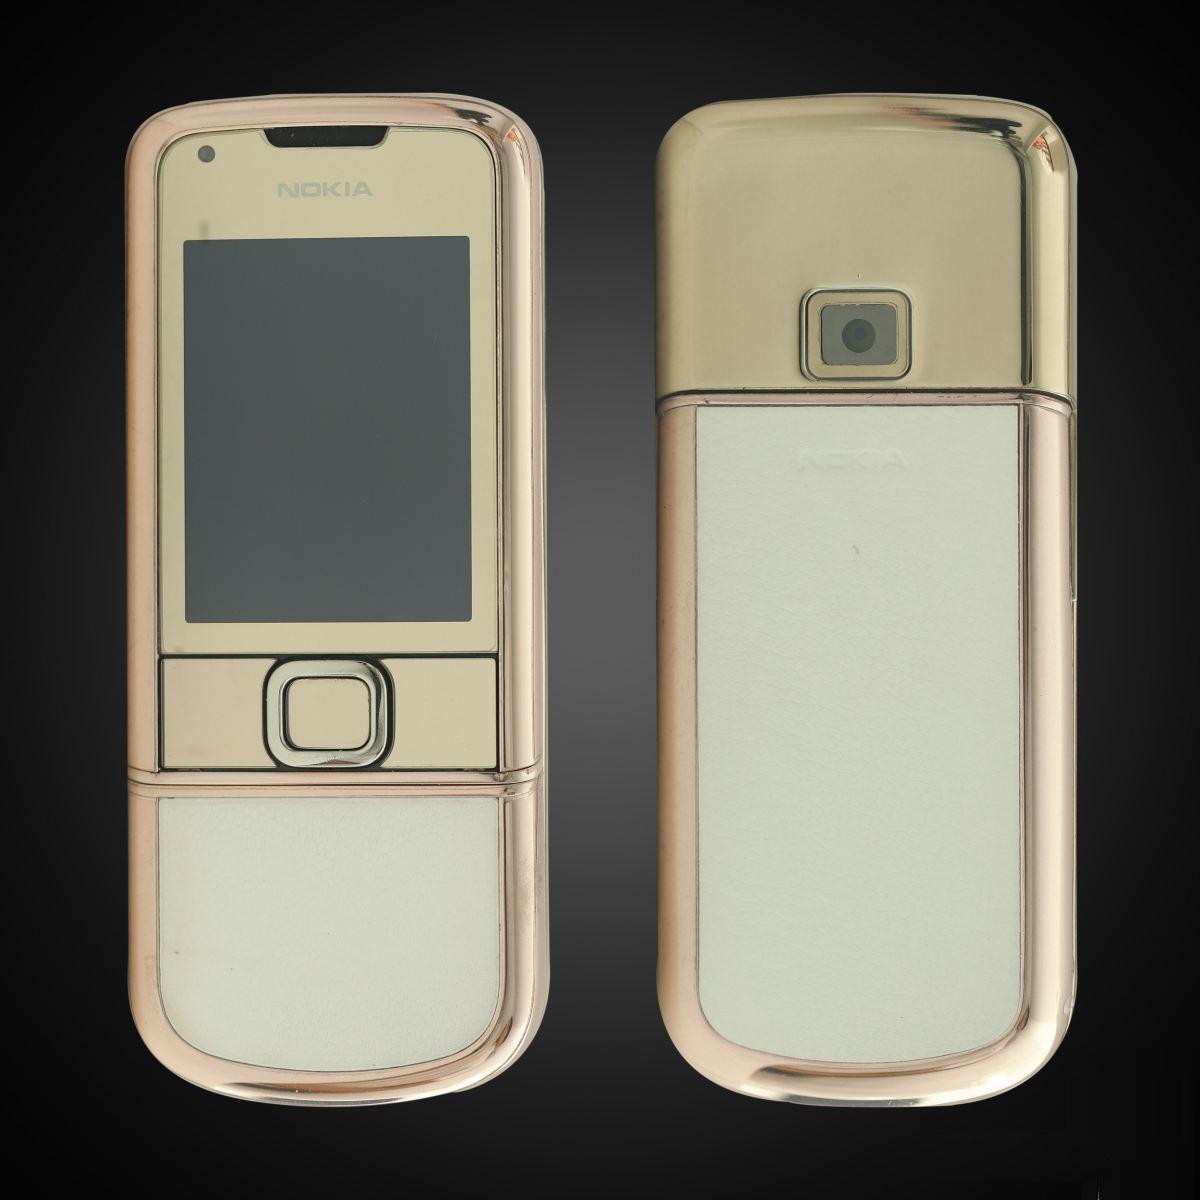 Nokia 8800 Gold Diamond Arte - kiệt tác điện thoại cổ